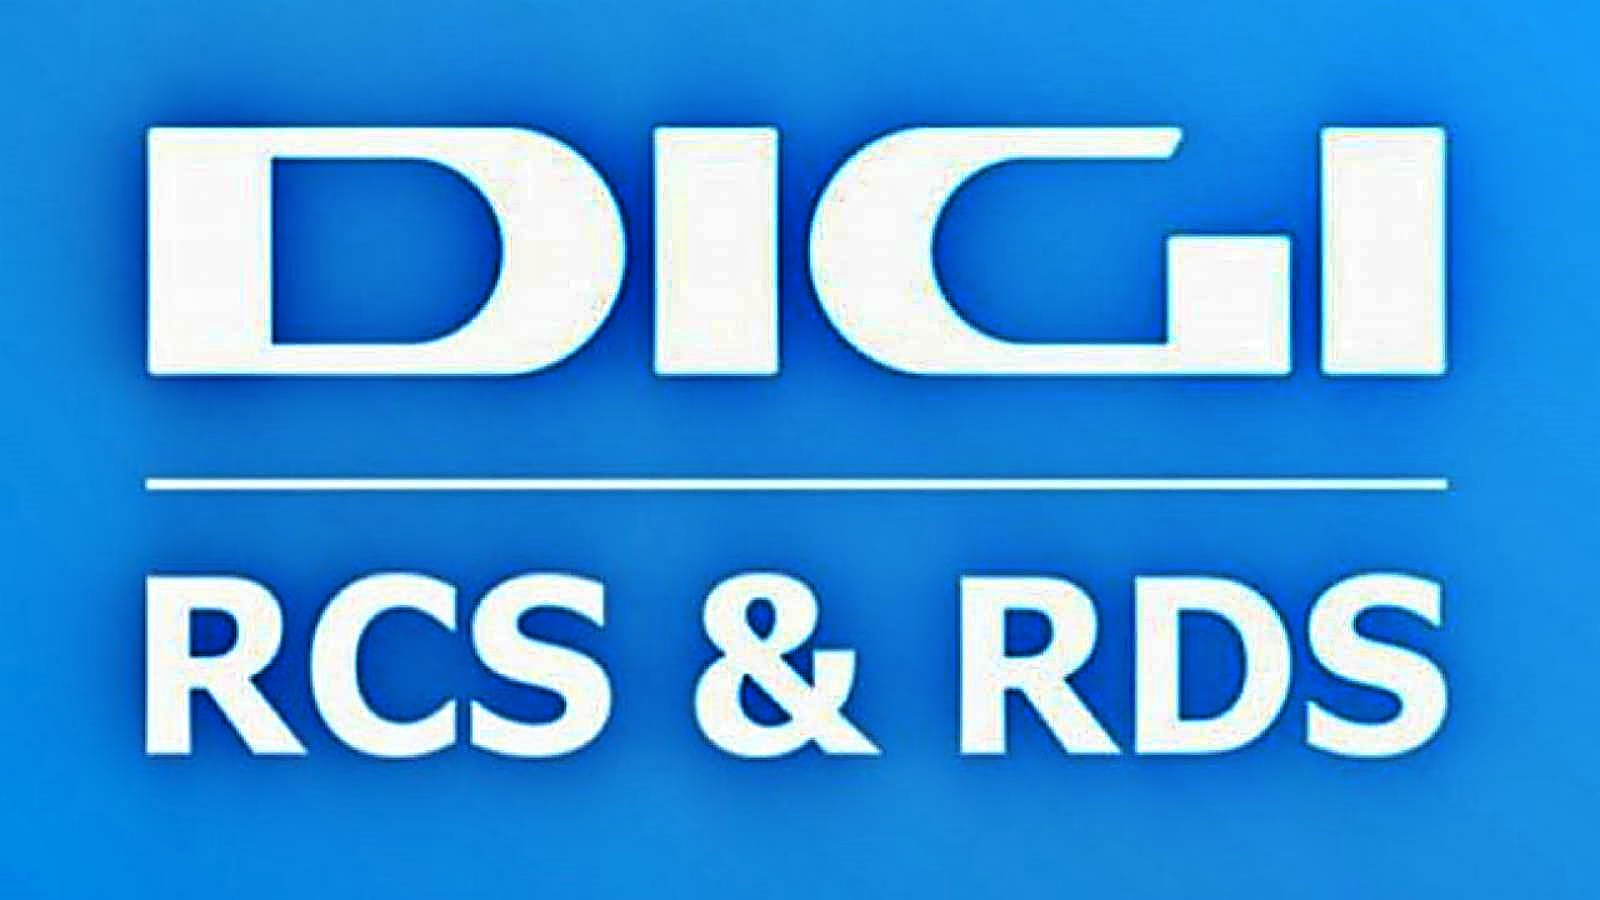 Virallisesti päätetty DIGI RCS & RDS -suurtoimenpide, joka tarjoaa asiakkaille puoleen hintaan